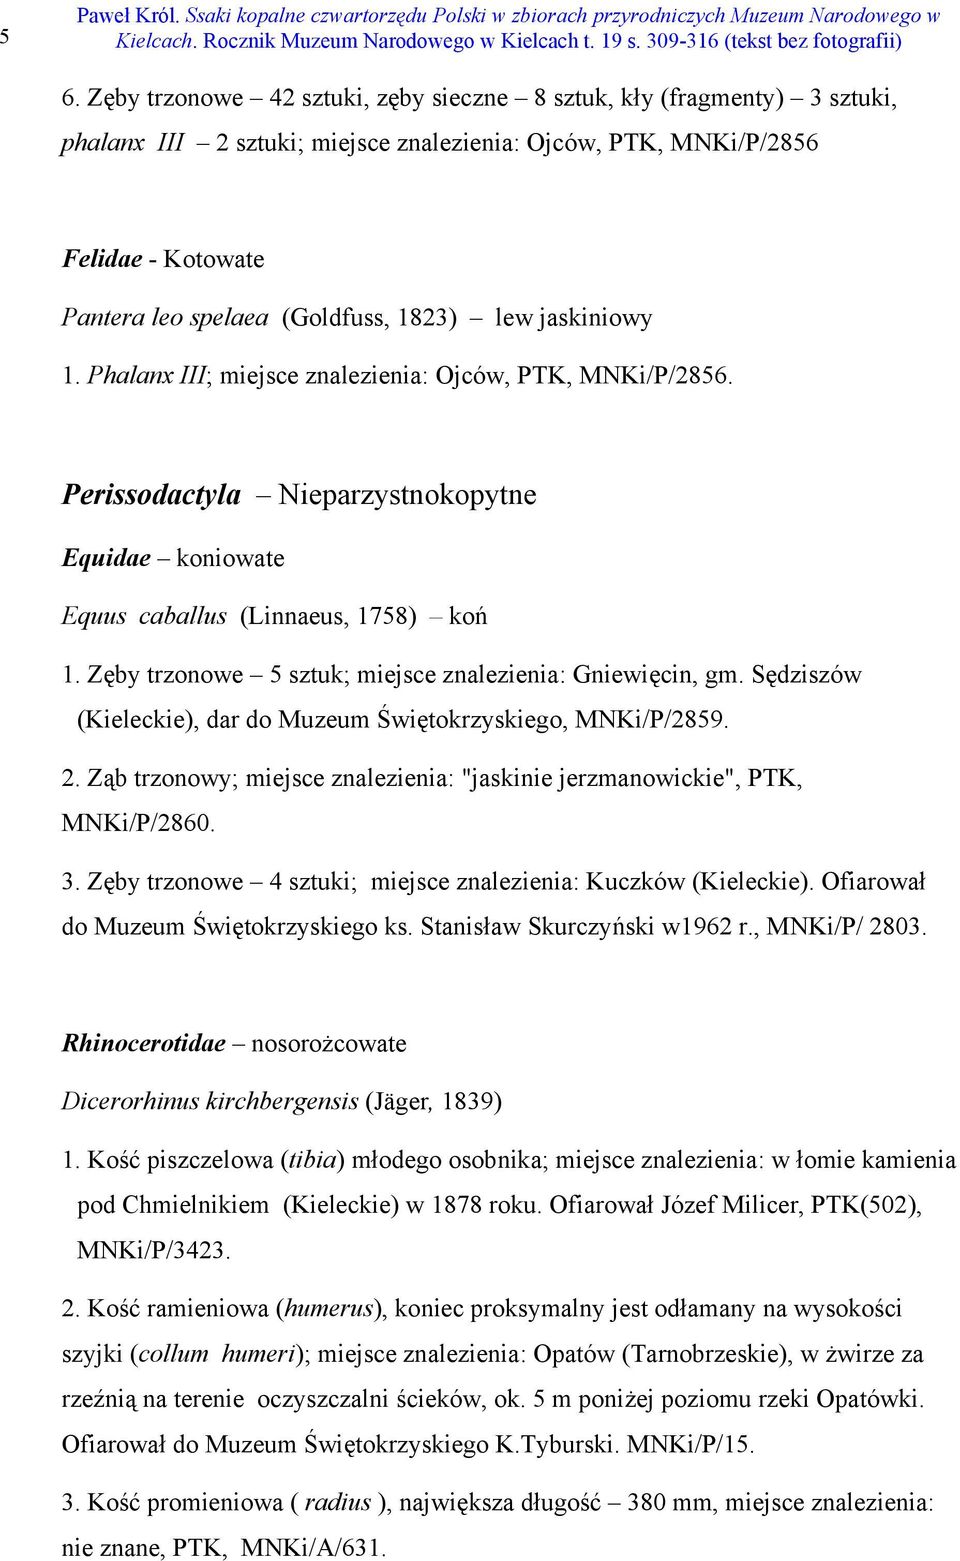 Zęby trzonowe 5 sztuk; miejsce znalezienia: Gniewięcin, gm. Sędziszów (Kieleckie), dar do Muzeum Świętokrzyskiego, MNKi/P/2859. 2.